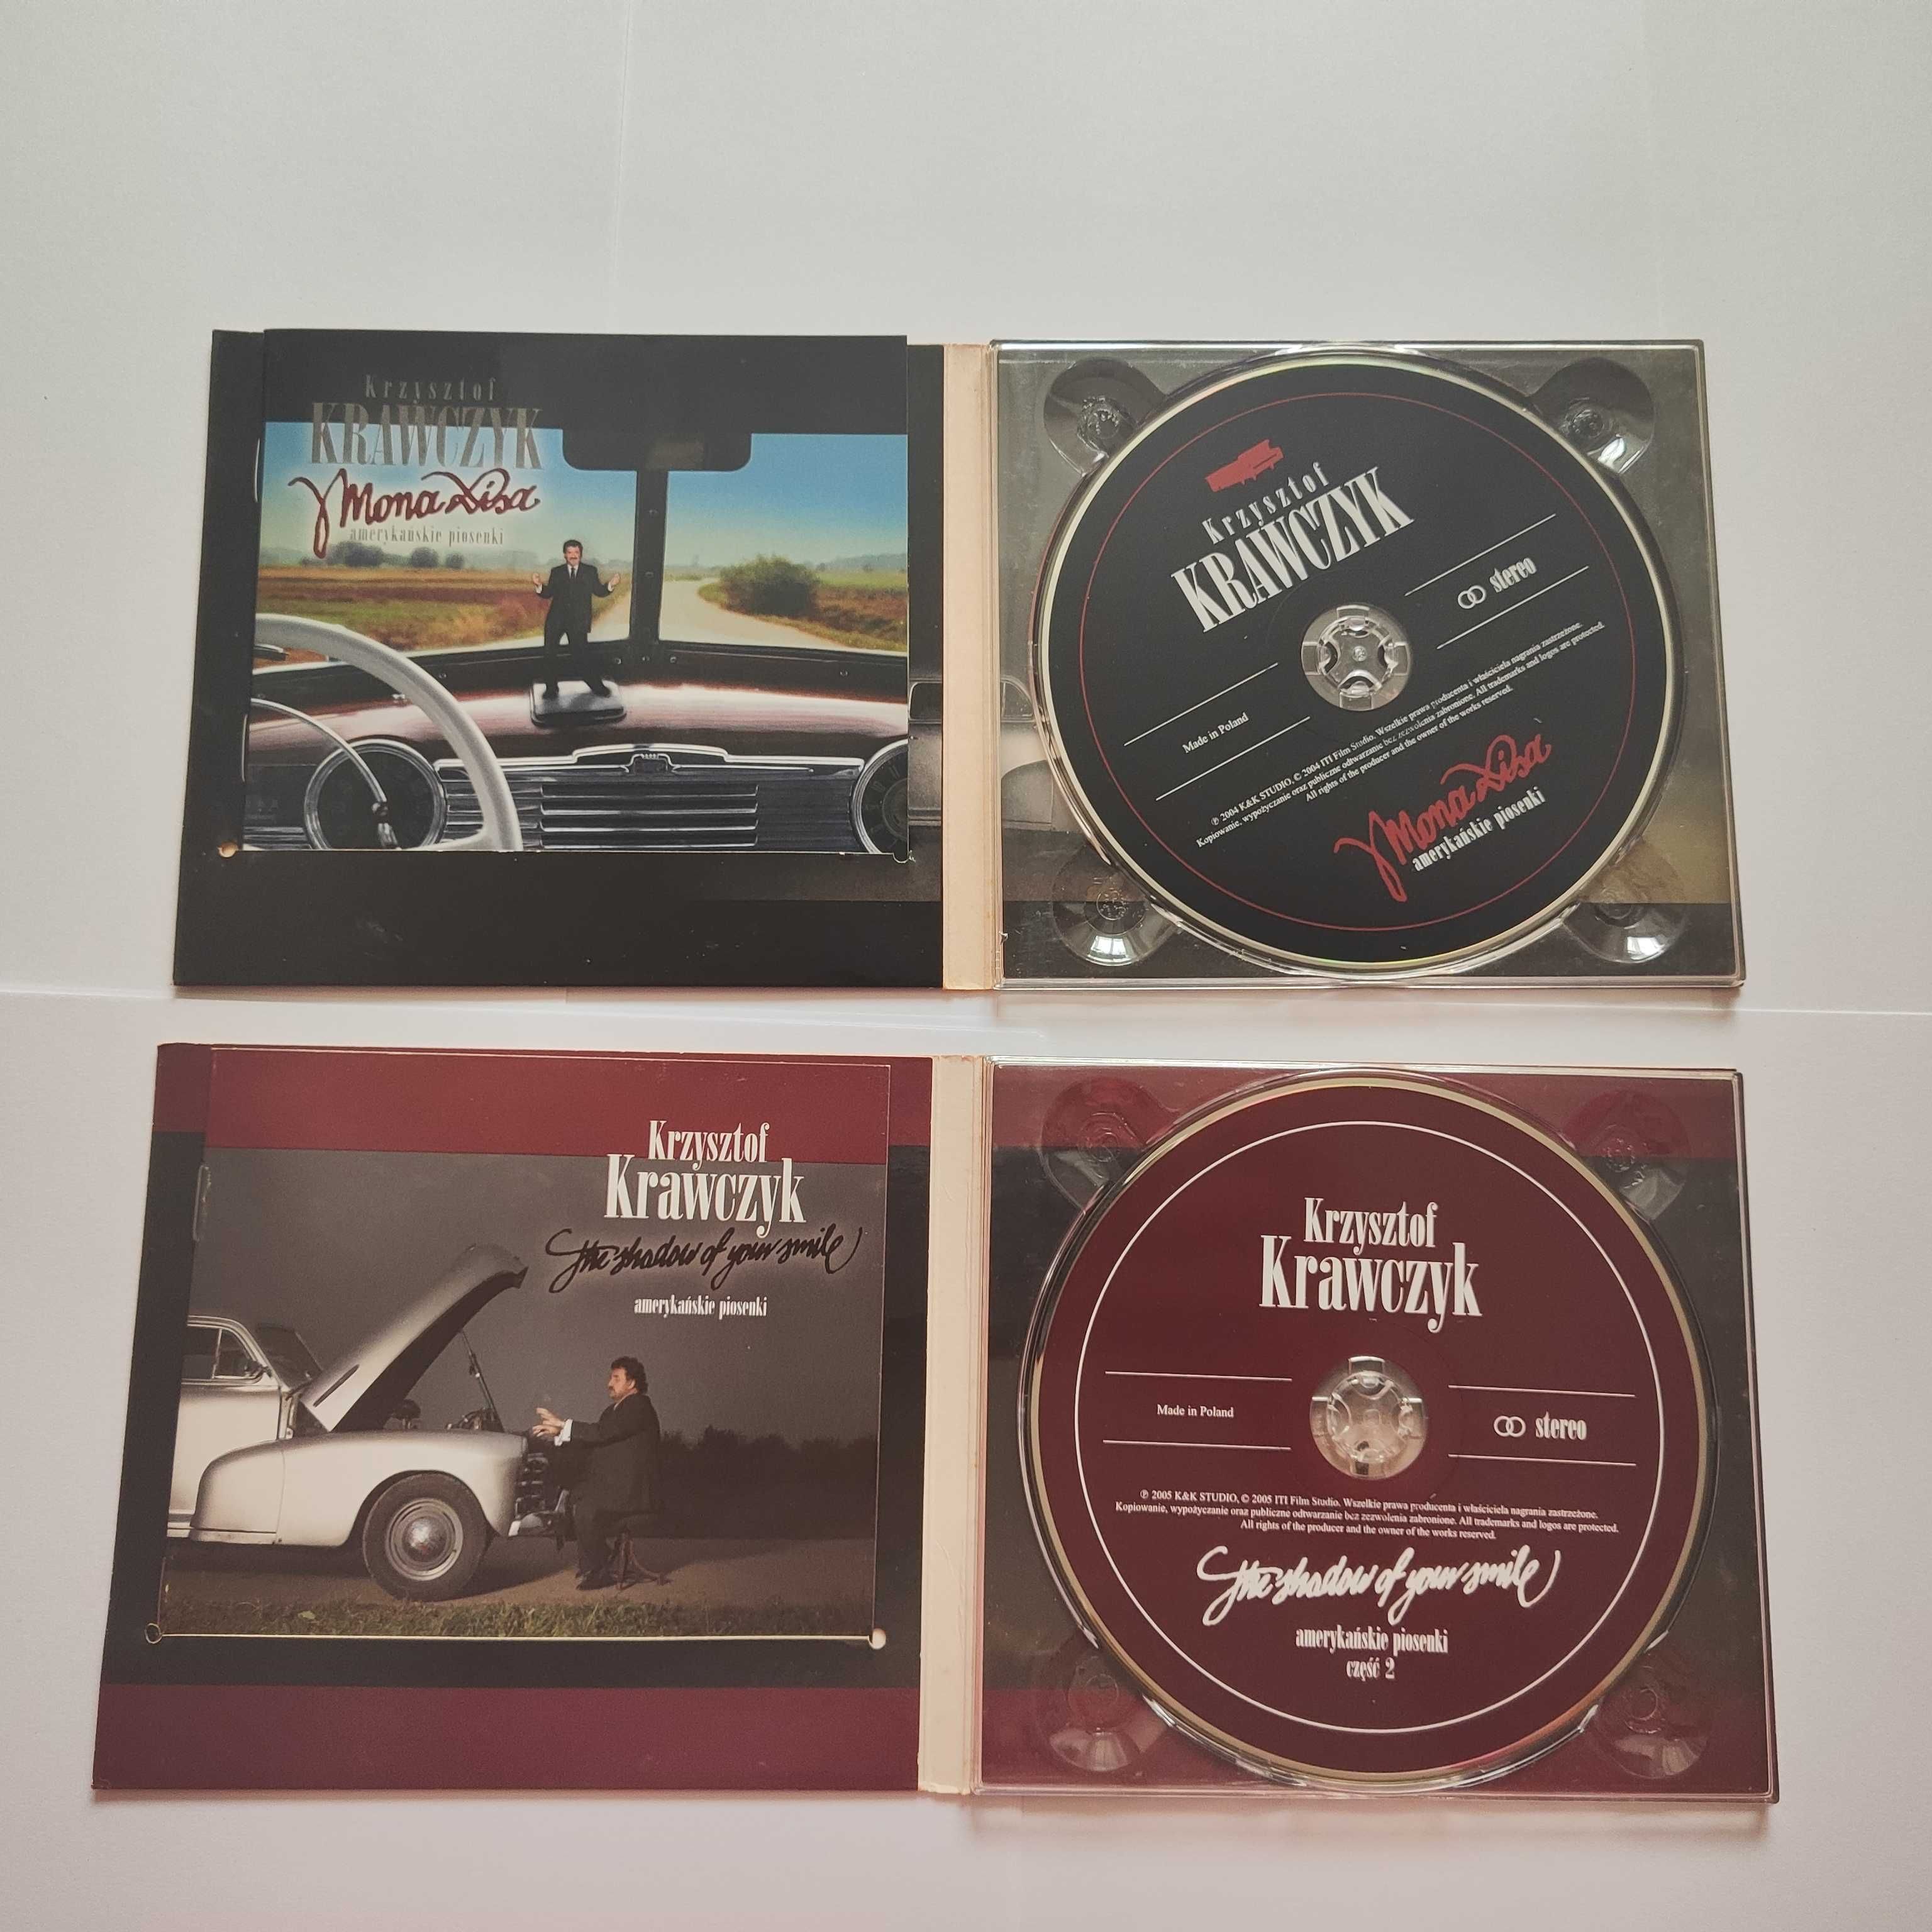 Dwie płyty CD Krzysztof Krawczyk "Amerykańskie piosenki" wydanie 2005r